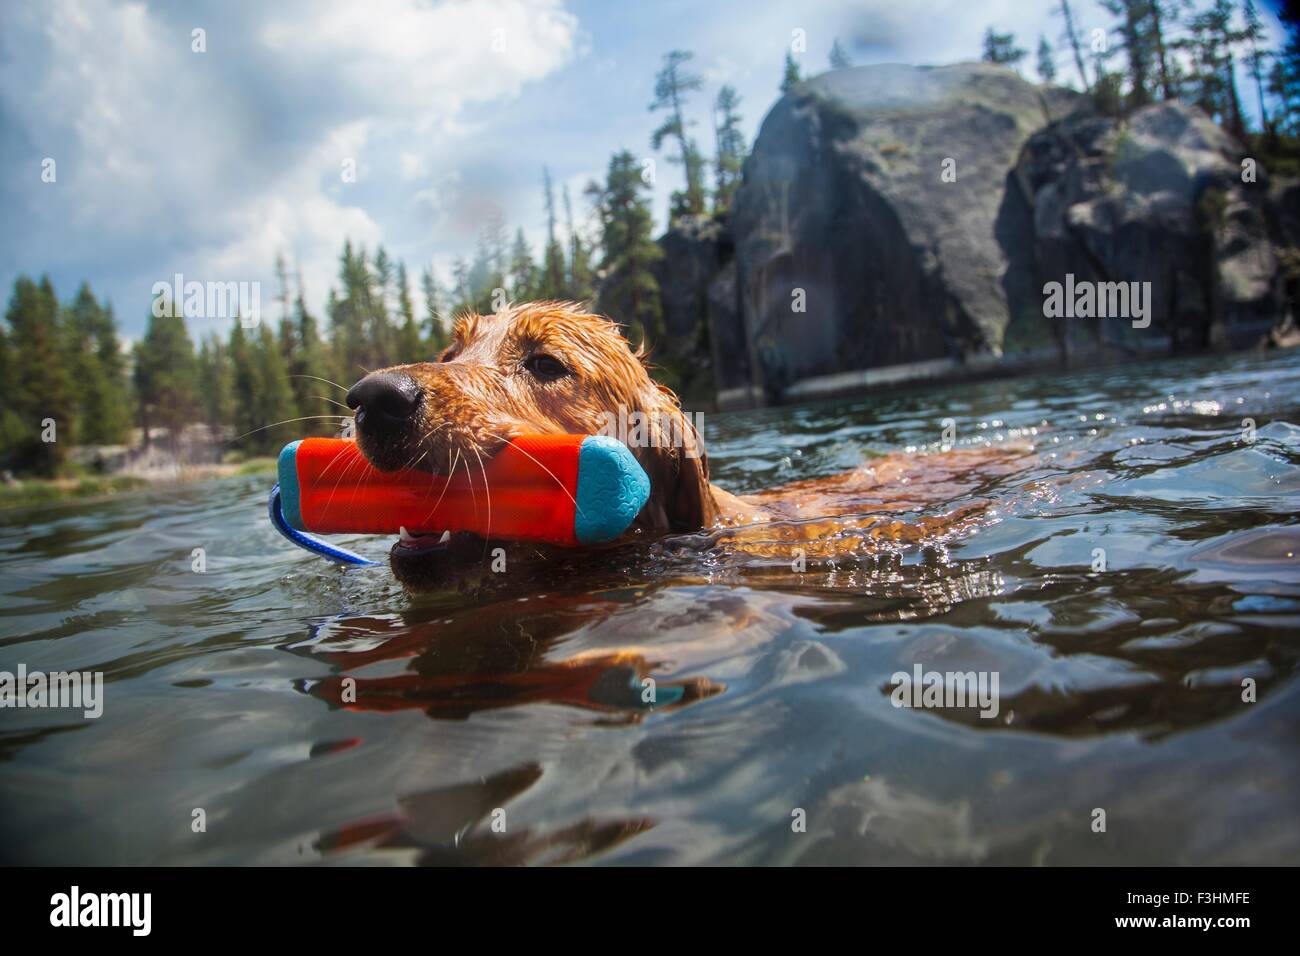 Piscine chien jouet transportant en bouche, High Sierra National Park, California, USA Banque D'Images